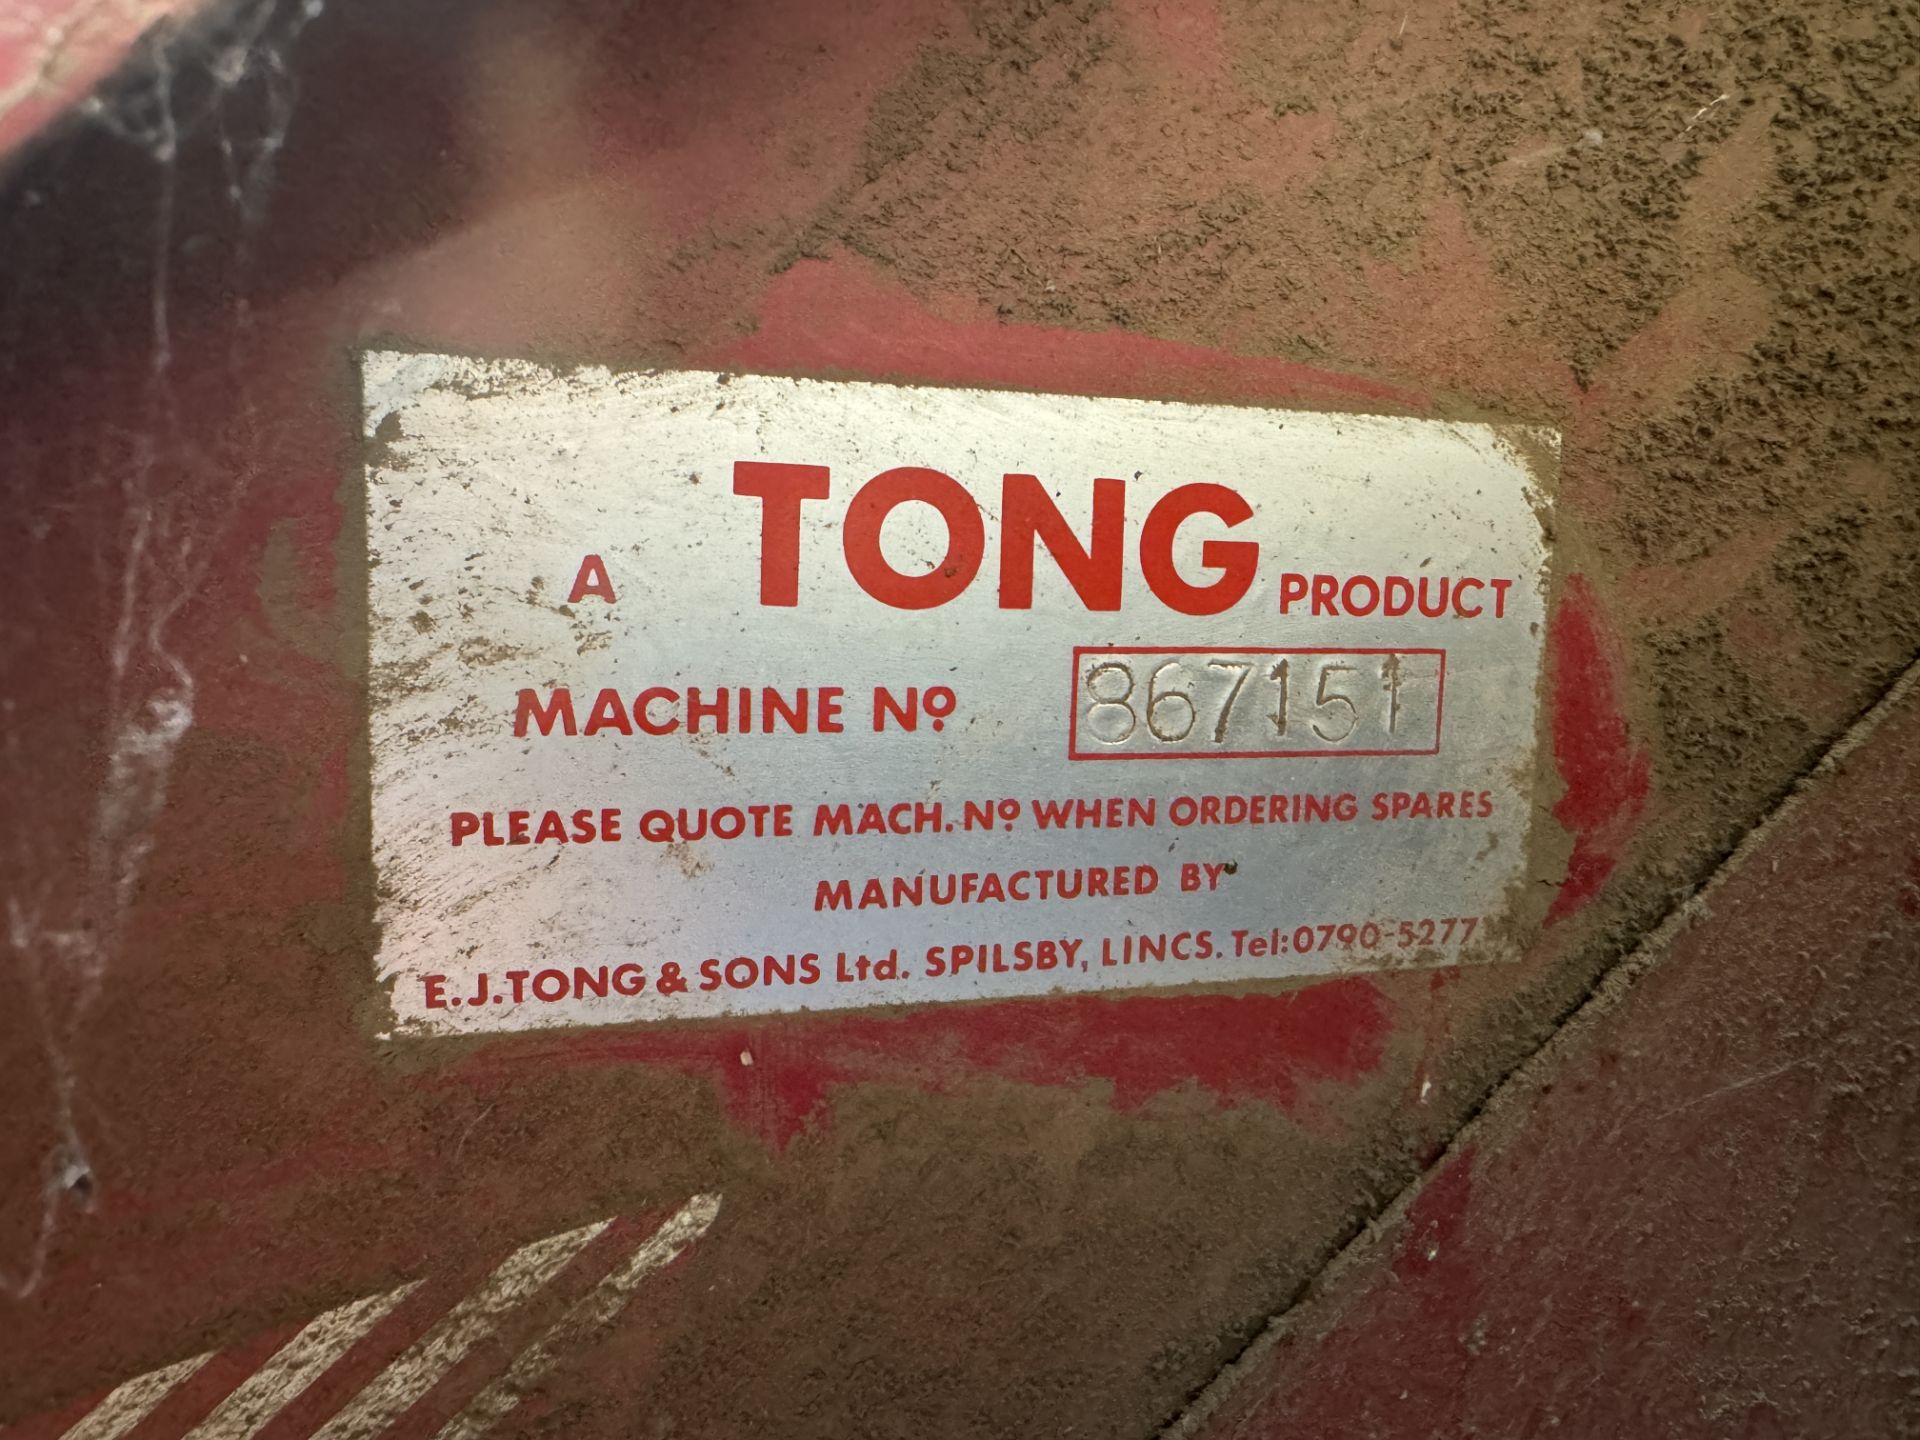 Tong bagging machine, 3 phase, Machine No 867151, passed PAT test - Image 2 of 2